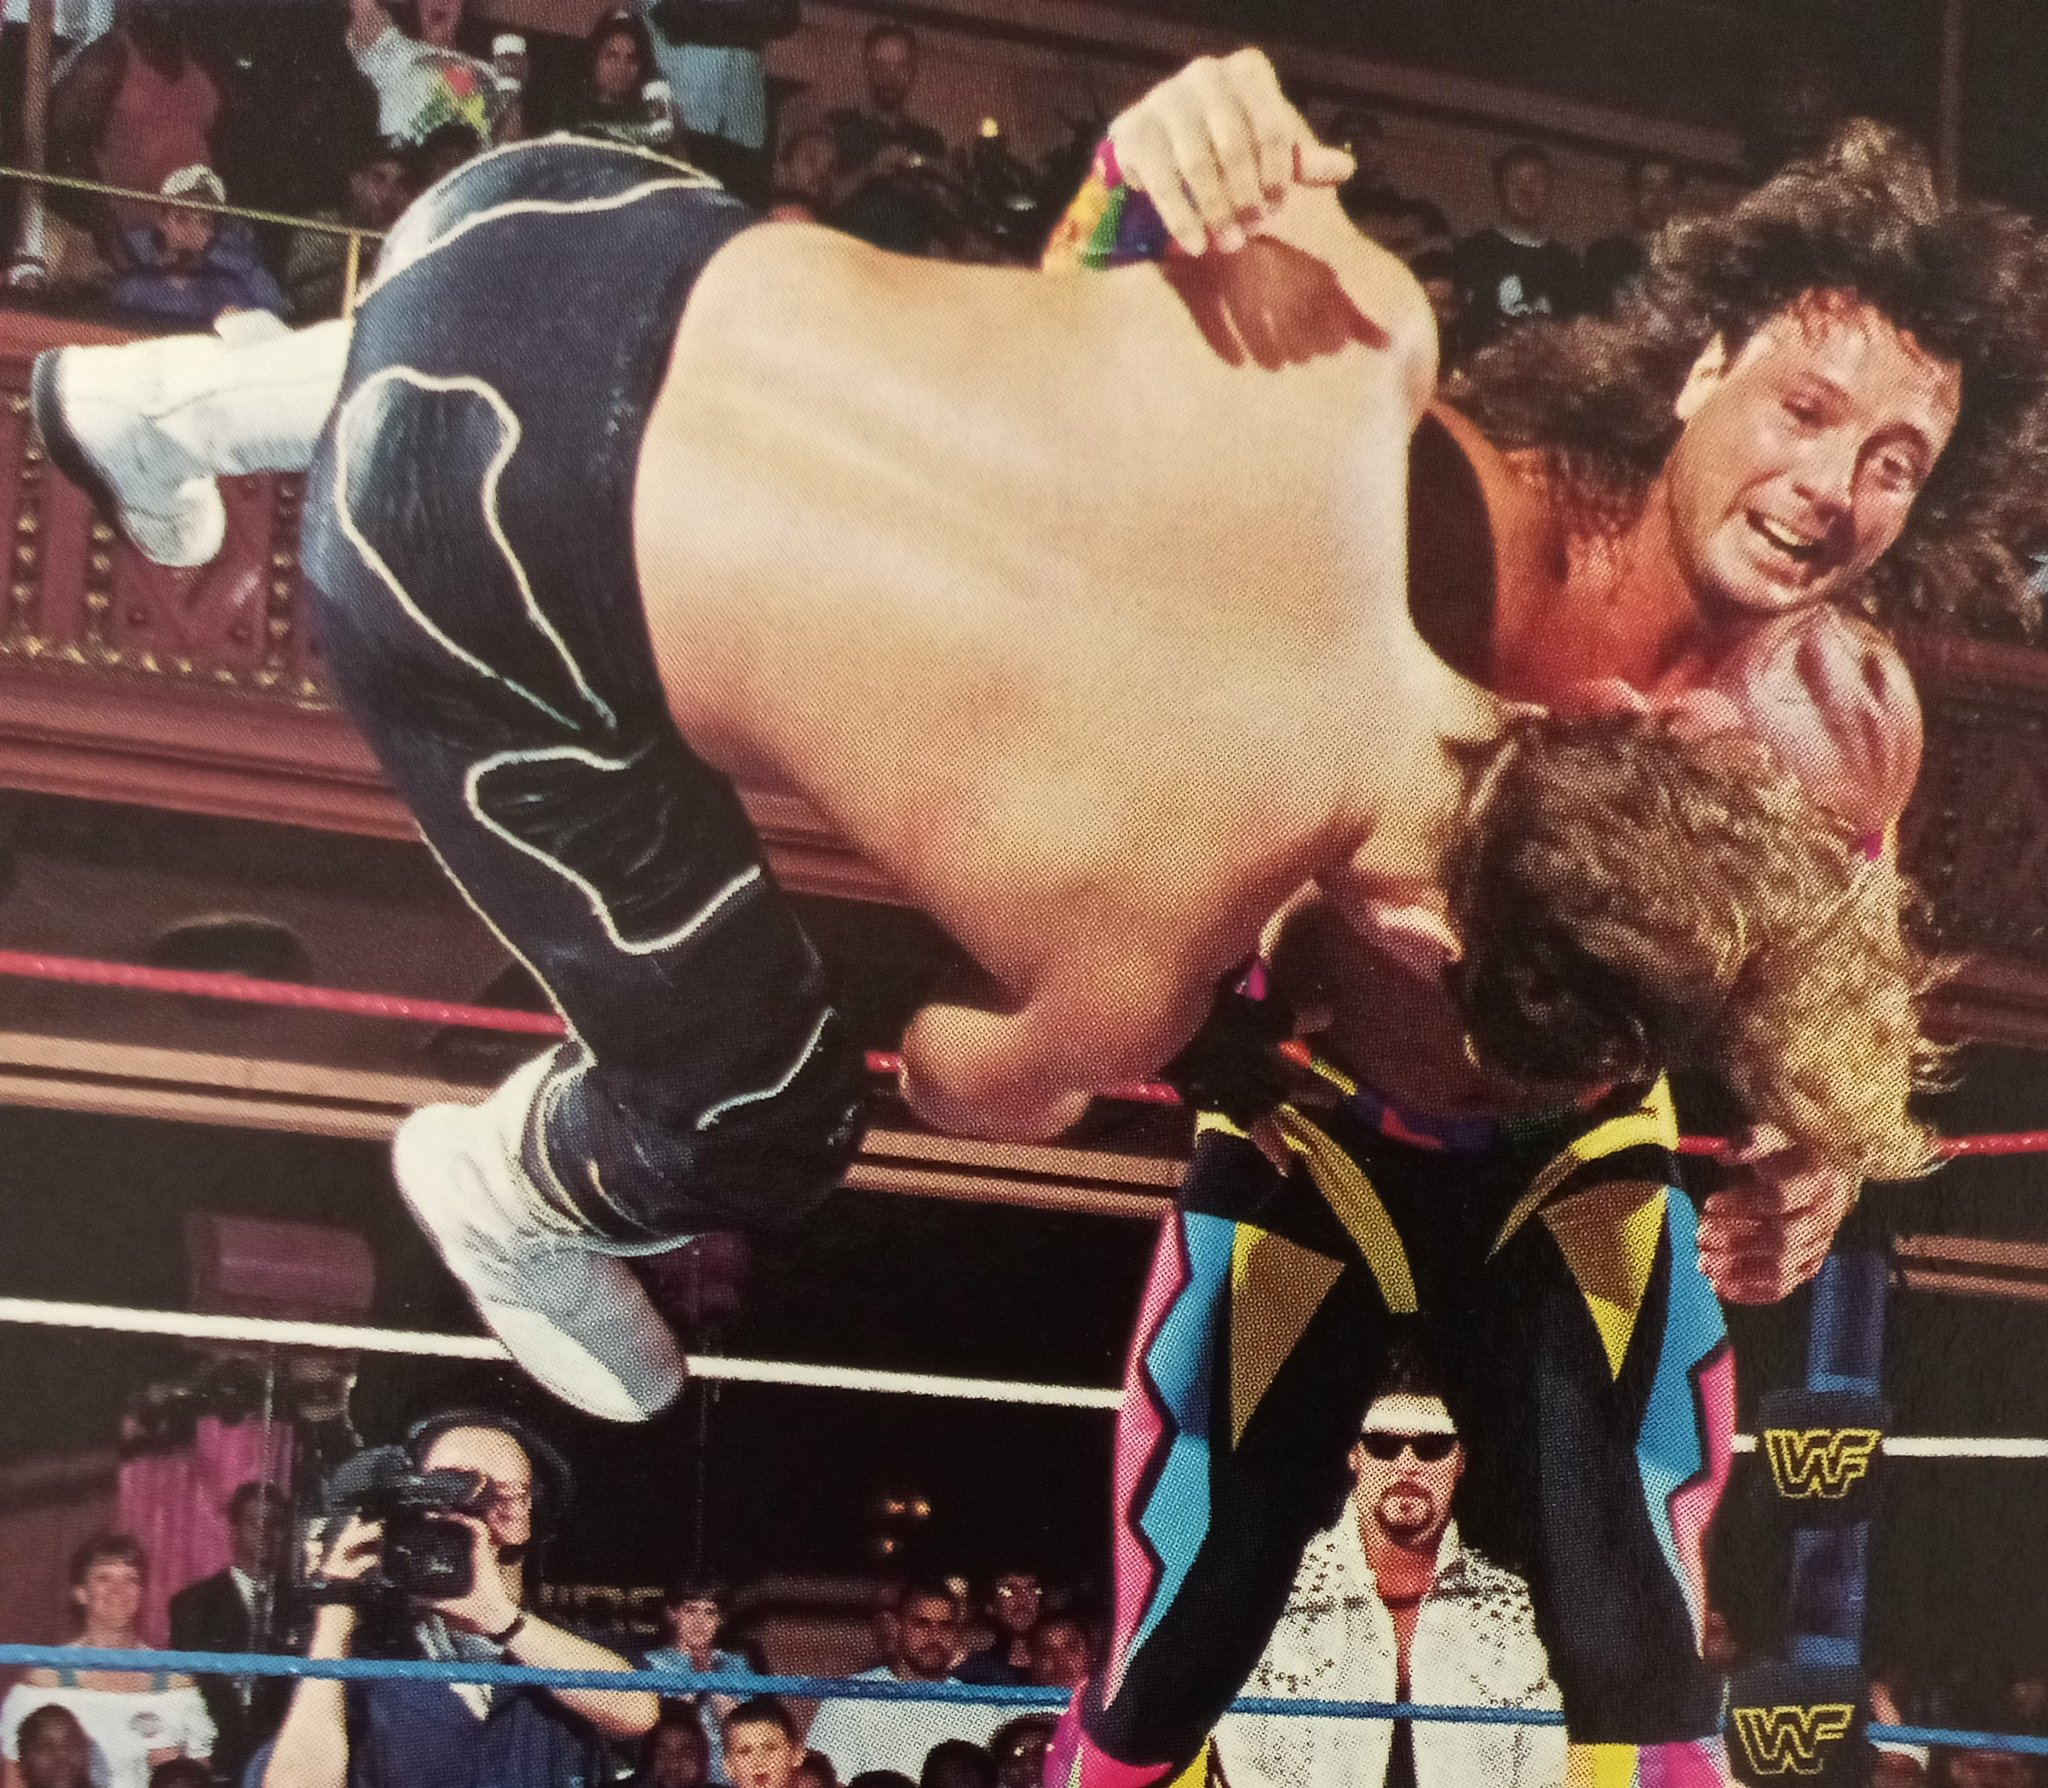 WWE Diesel vs Marty Janetty 1993 - Luta Livre Americana WWF Tarzan